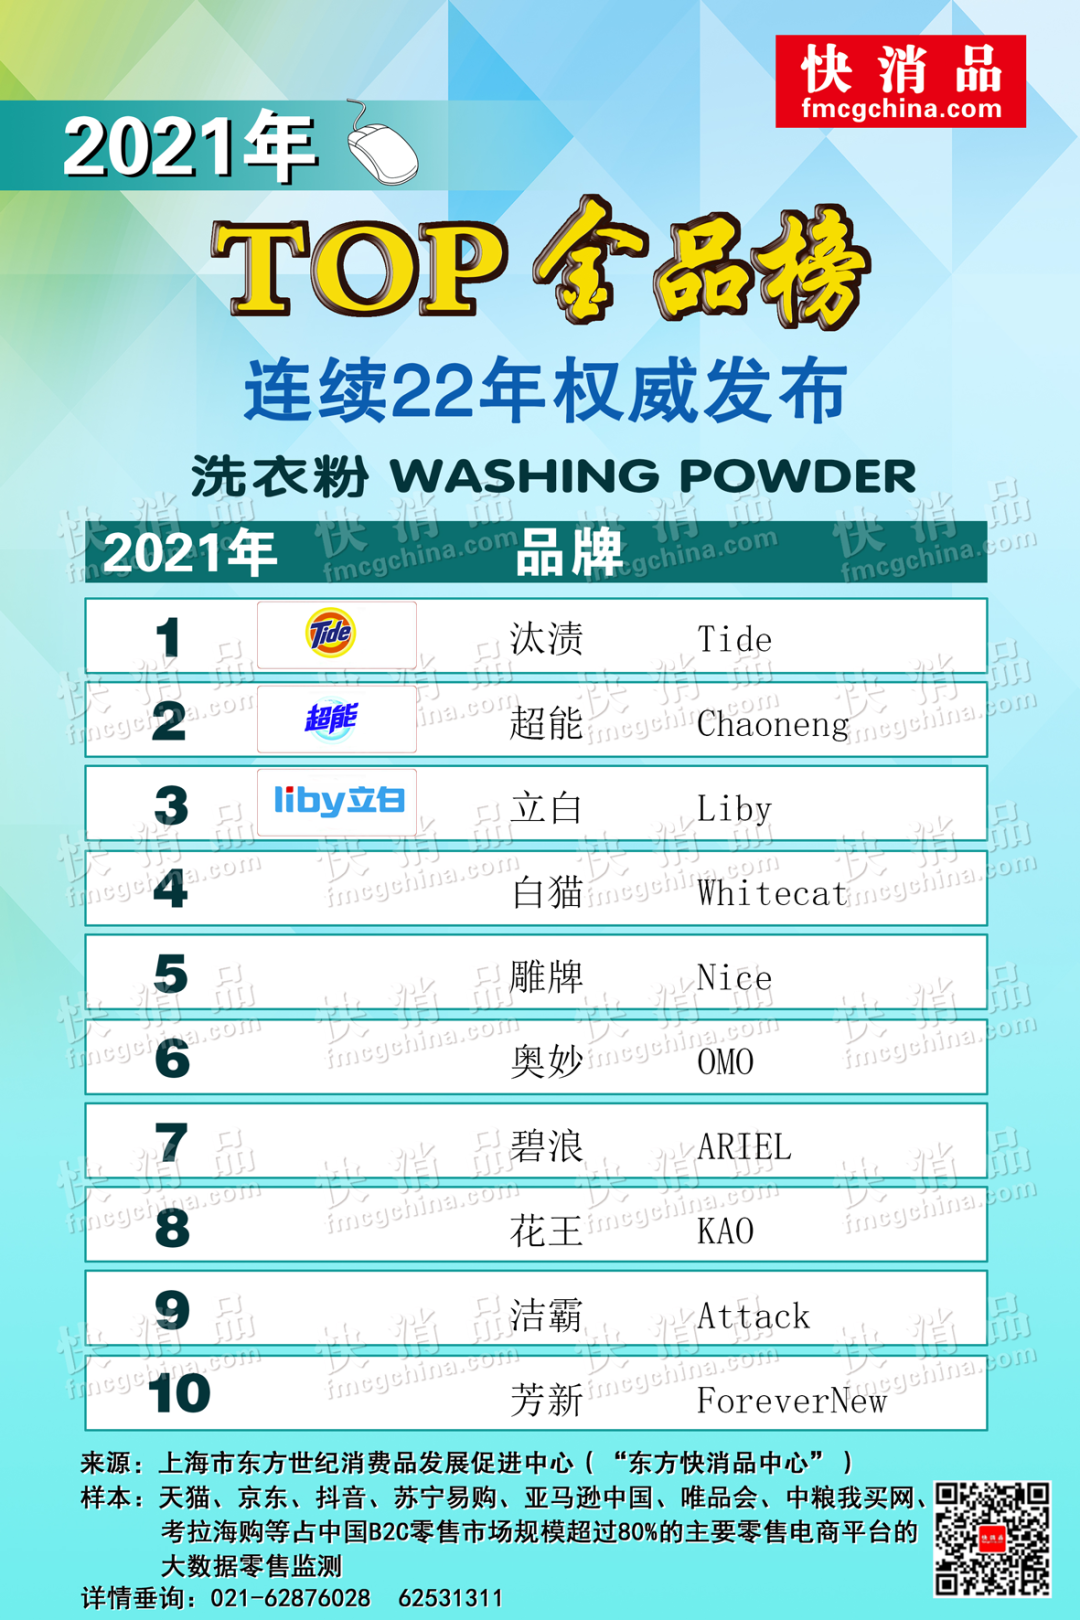 「独家」2021年线上TOP金品榜——洗衣粉、洗衣液、洗衣凝珠公布